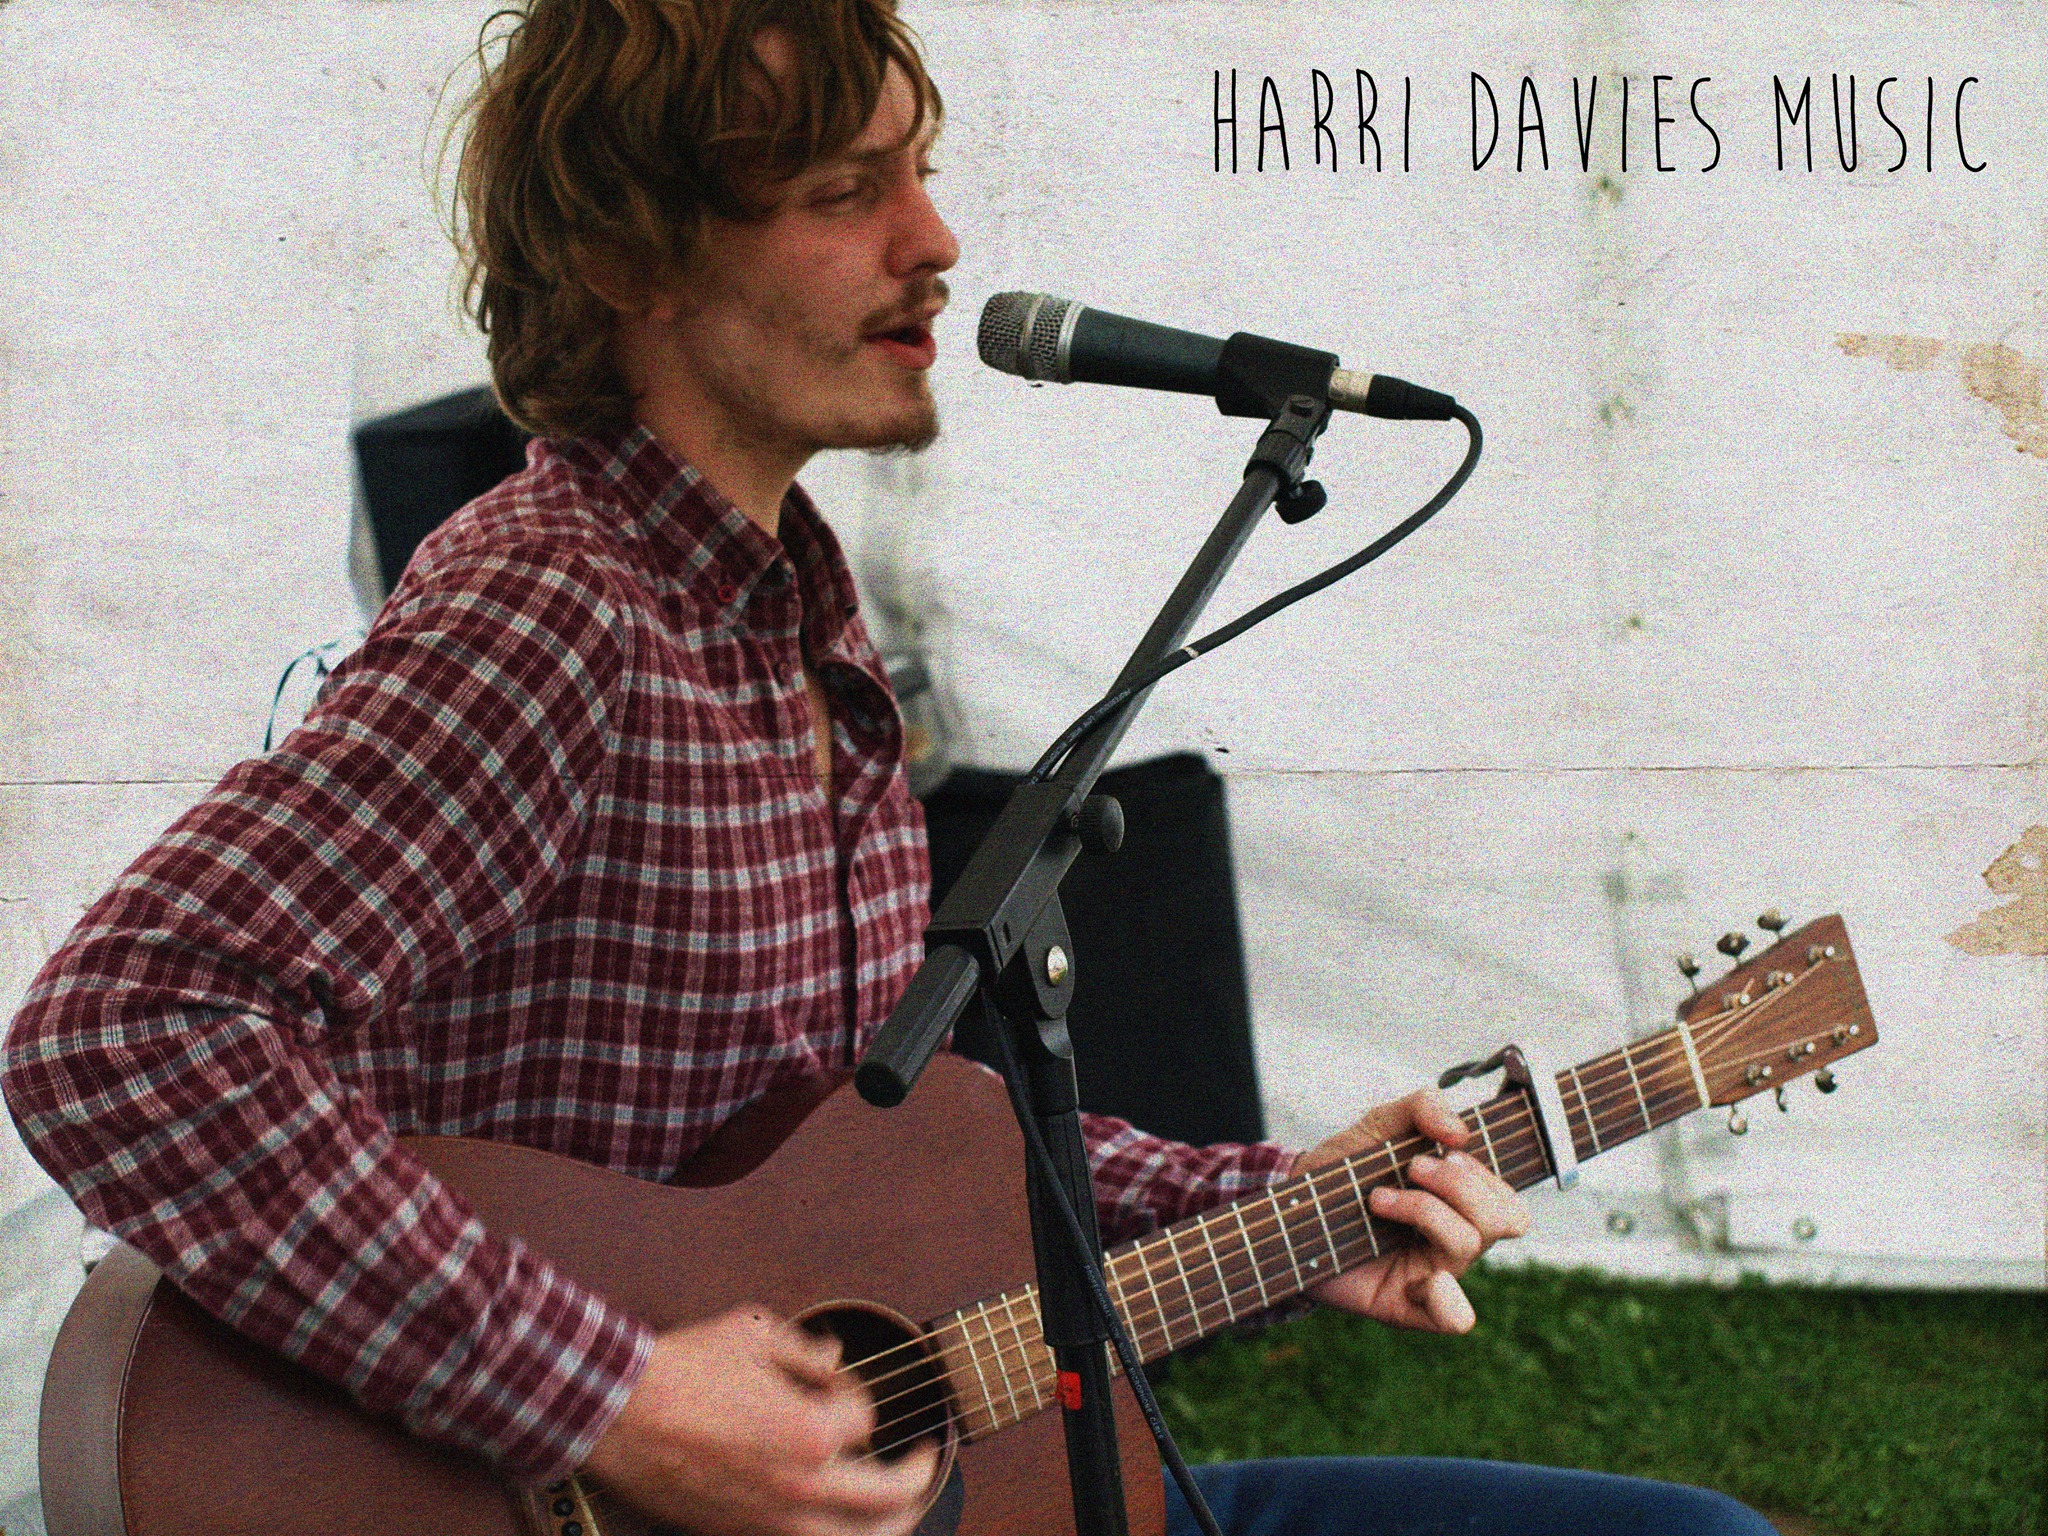 Harri Davies Interview – Living The Music Dream!